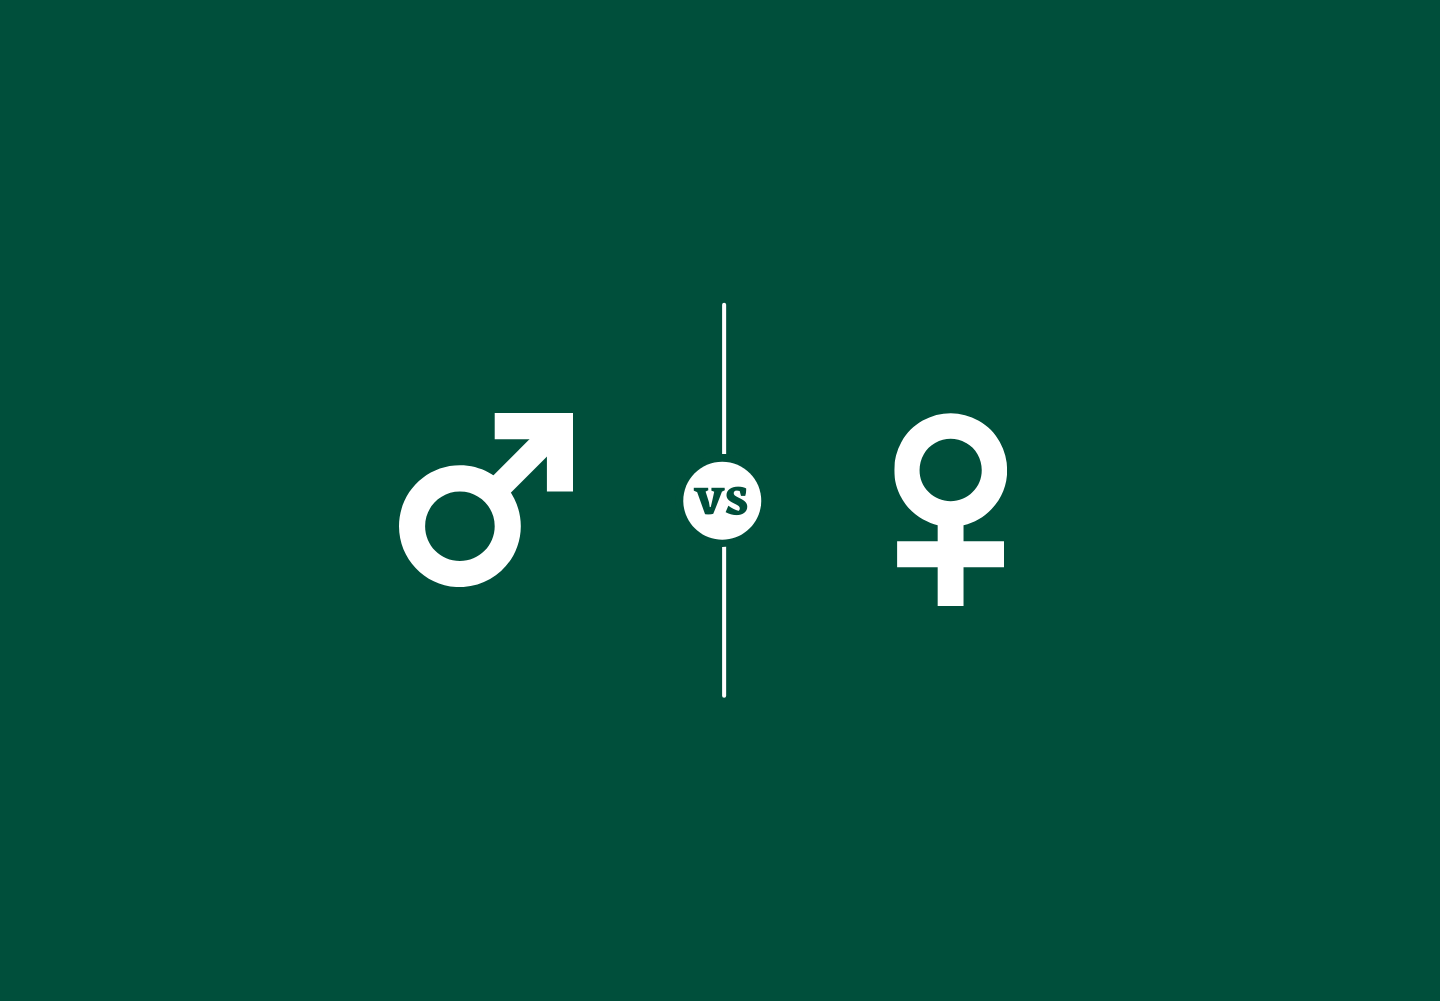 Masculinity vs femininity